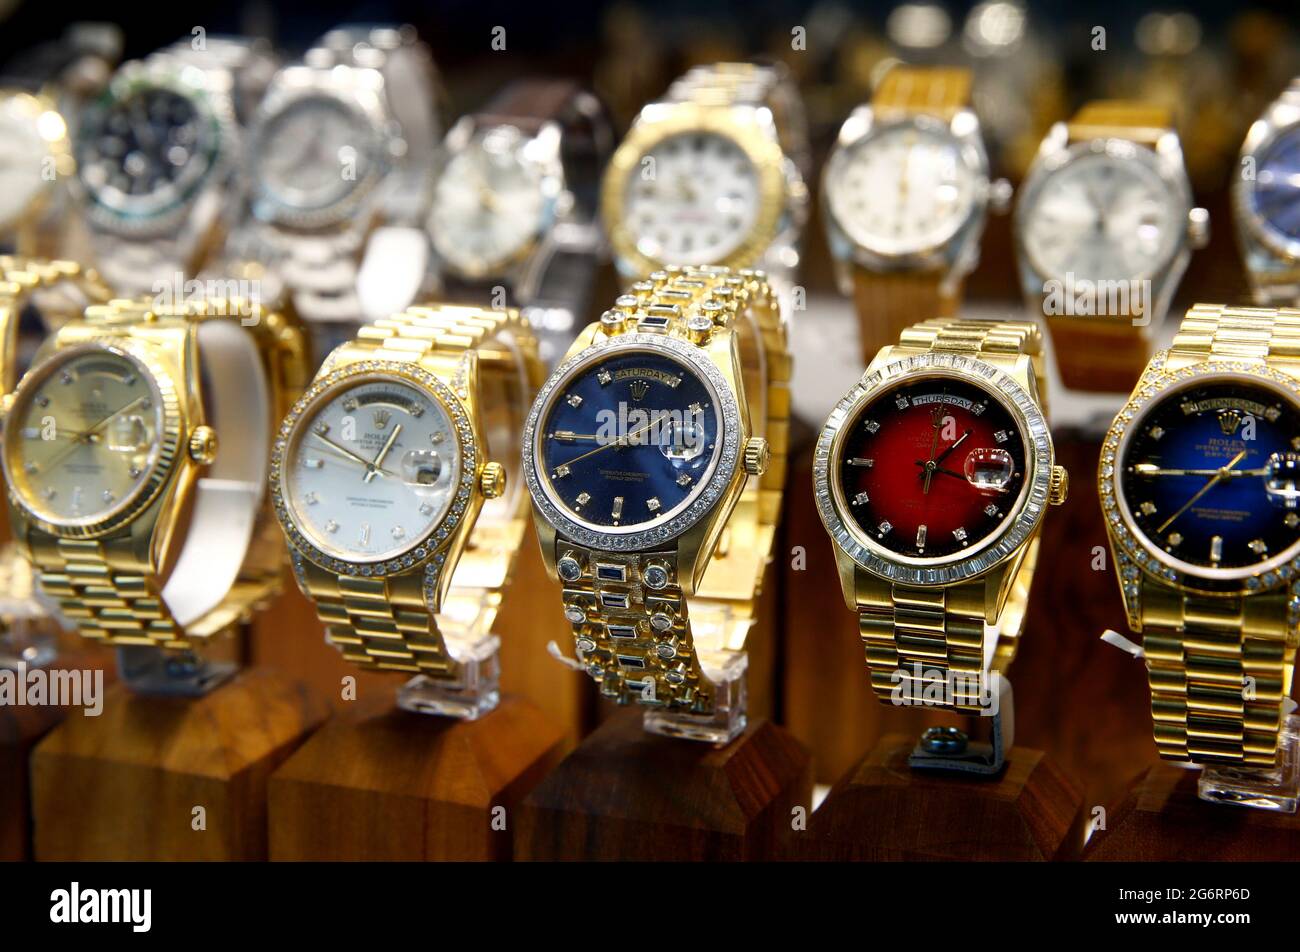 Gebrauchte Uhren des Schweizer Herstellers Rolex sind in einem Geschäft in  Zürich, Schweiz, am 8. Juli 2021 zu sehen. REUTERS/Arnd Wiegmann  Stockfotografie - Alamy